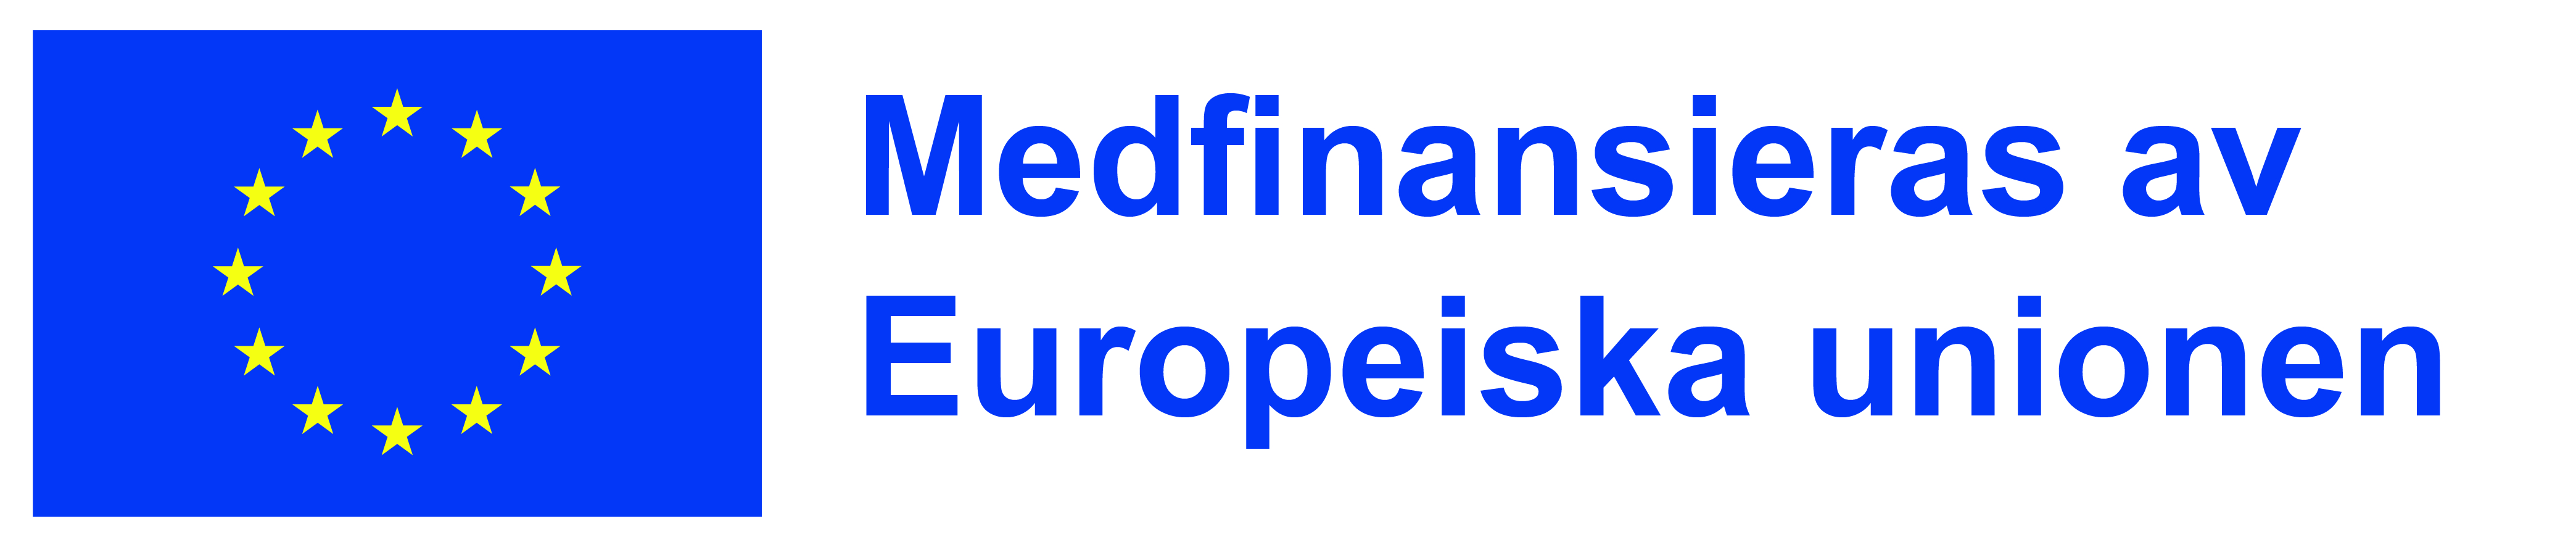 EU-logon: medifinansieras av Europeiska unionen.